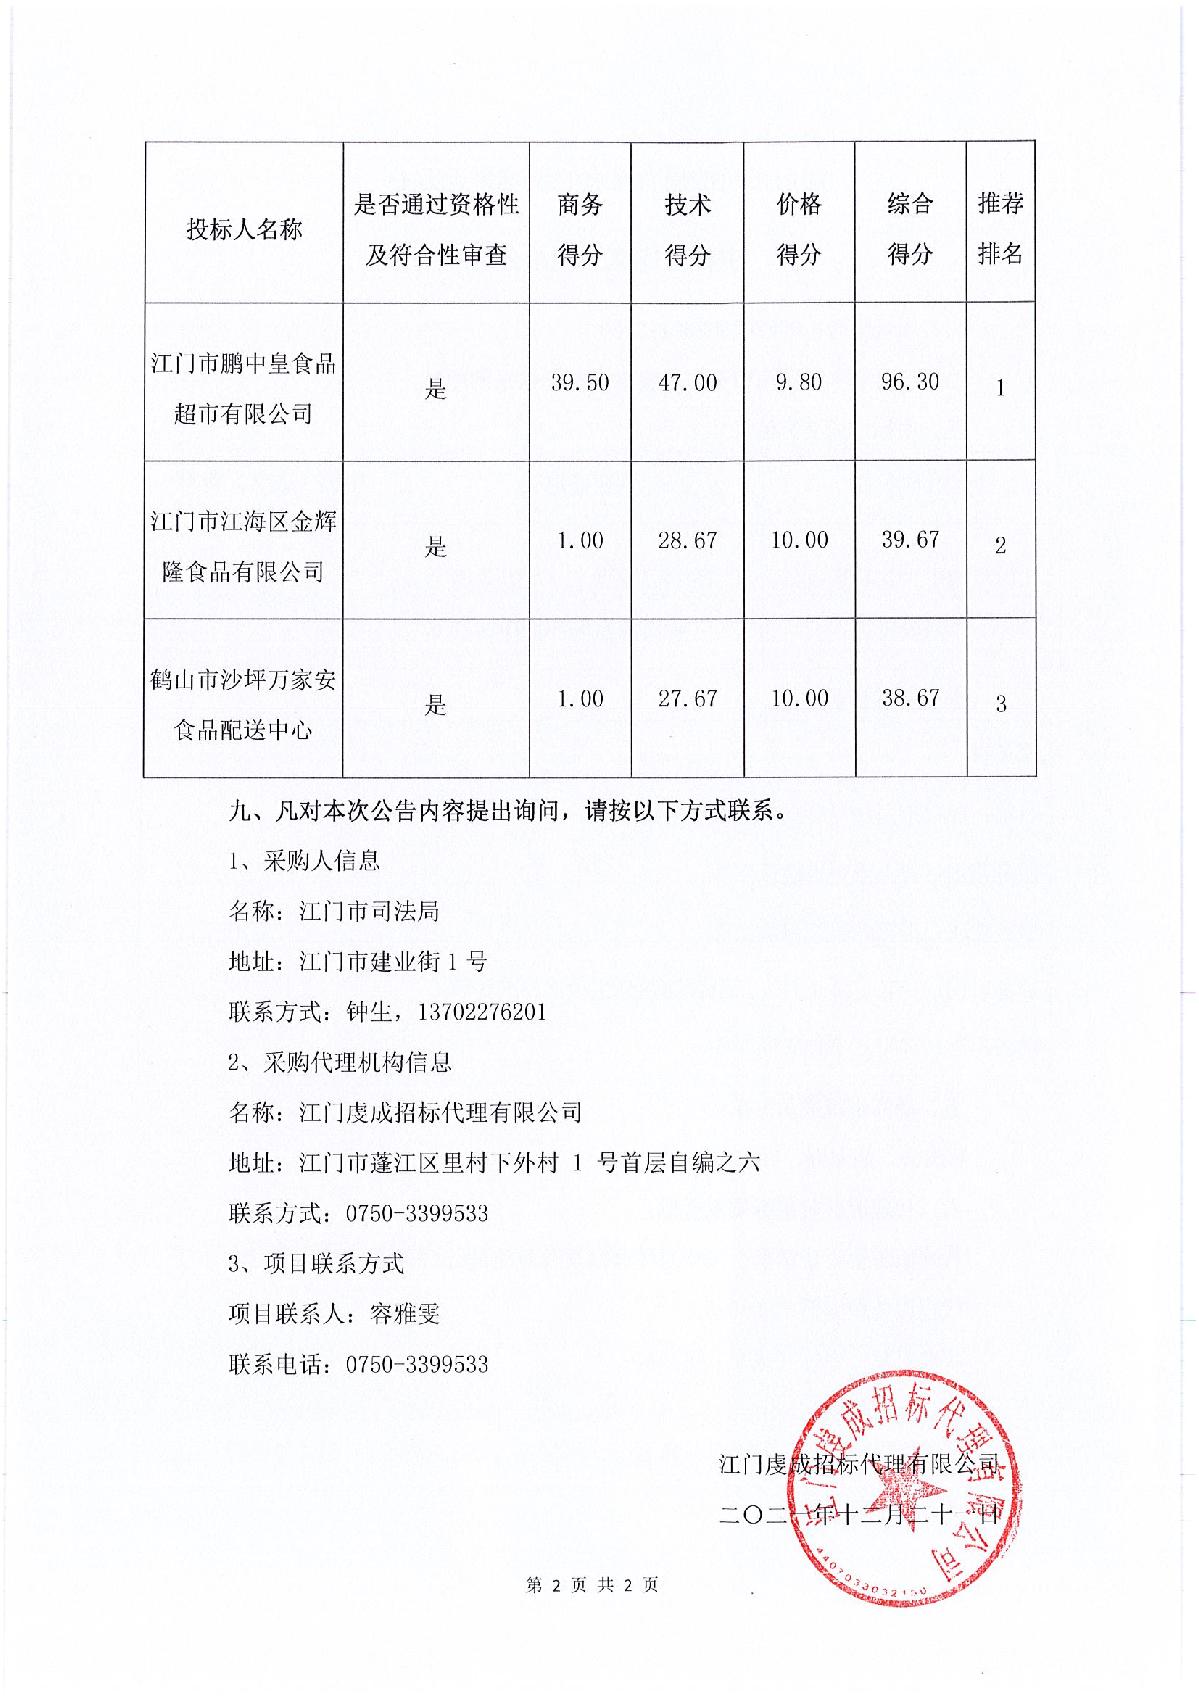 江门市司法局食堂食材配送采购项目中标（成交）结果公告_2.JPG